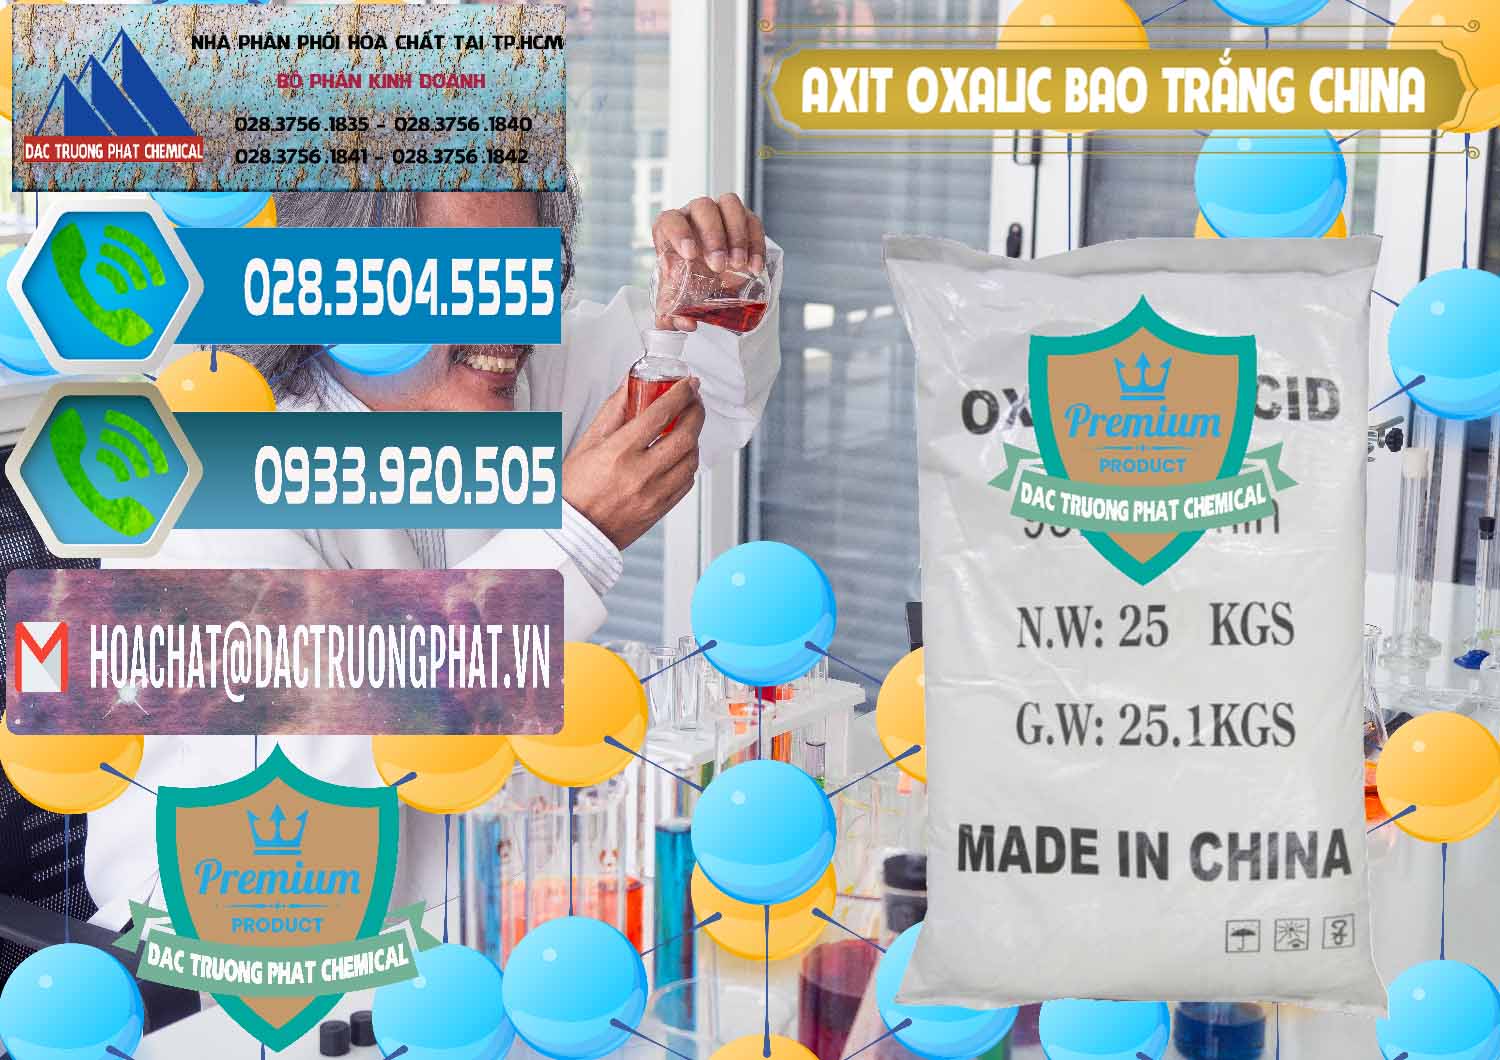 Công ty chuyên cung cấp ( bán ) Acid Oxalic – Axit Oxalic 99.6% Bao Trắng Trung Quốc China - 0270 - Cty phân phối ( cung cấp ) hóa chất tại TP.HCM - congtyhoachat.net